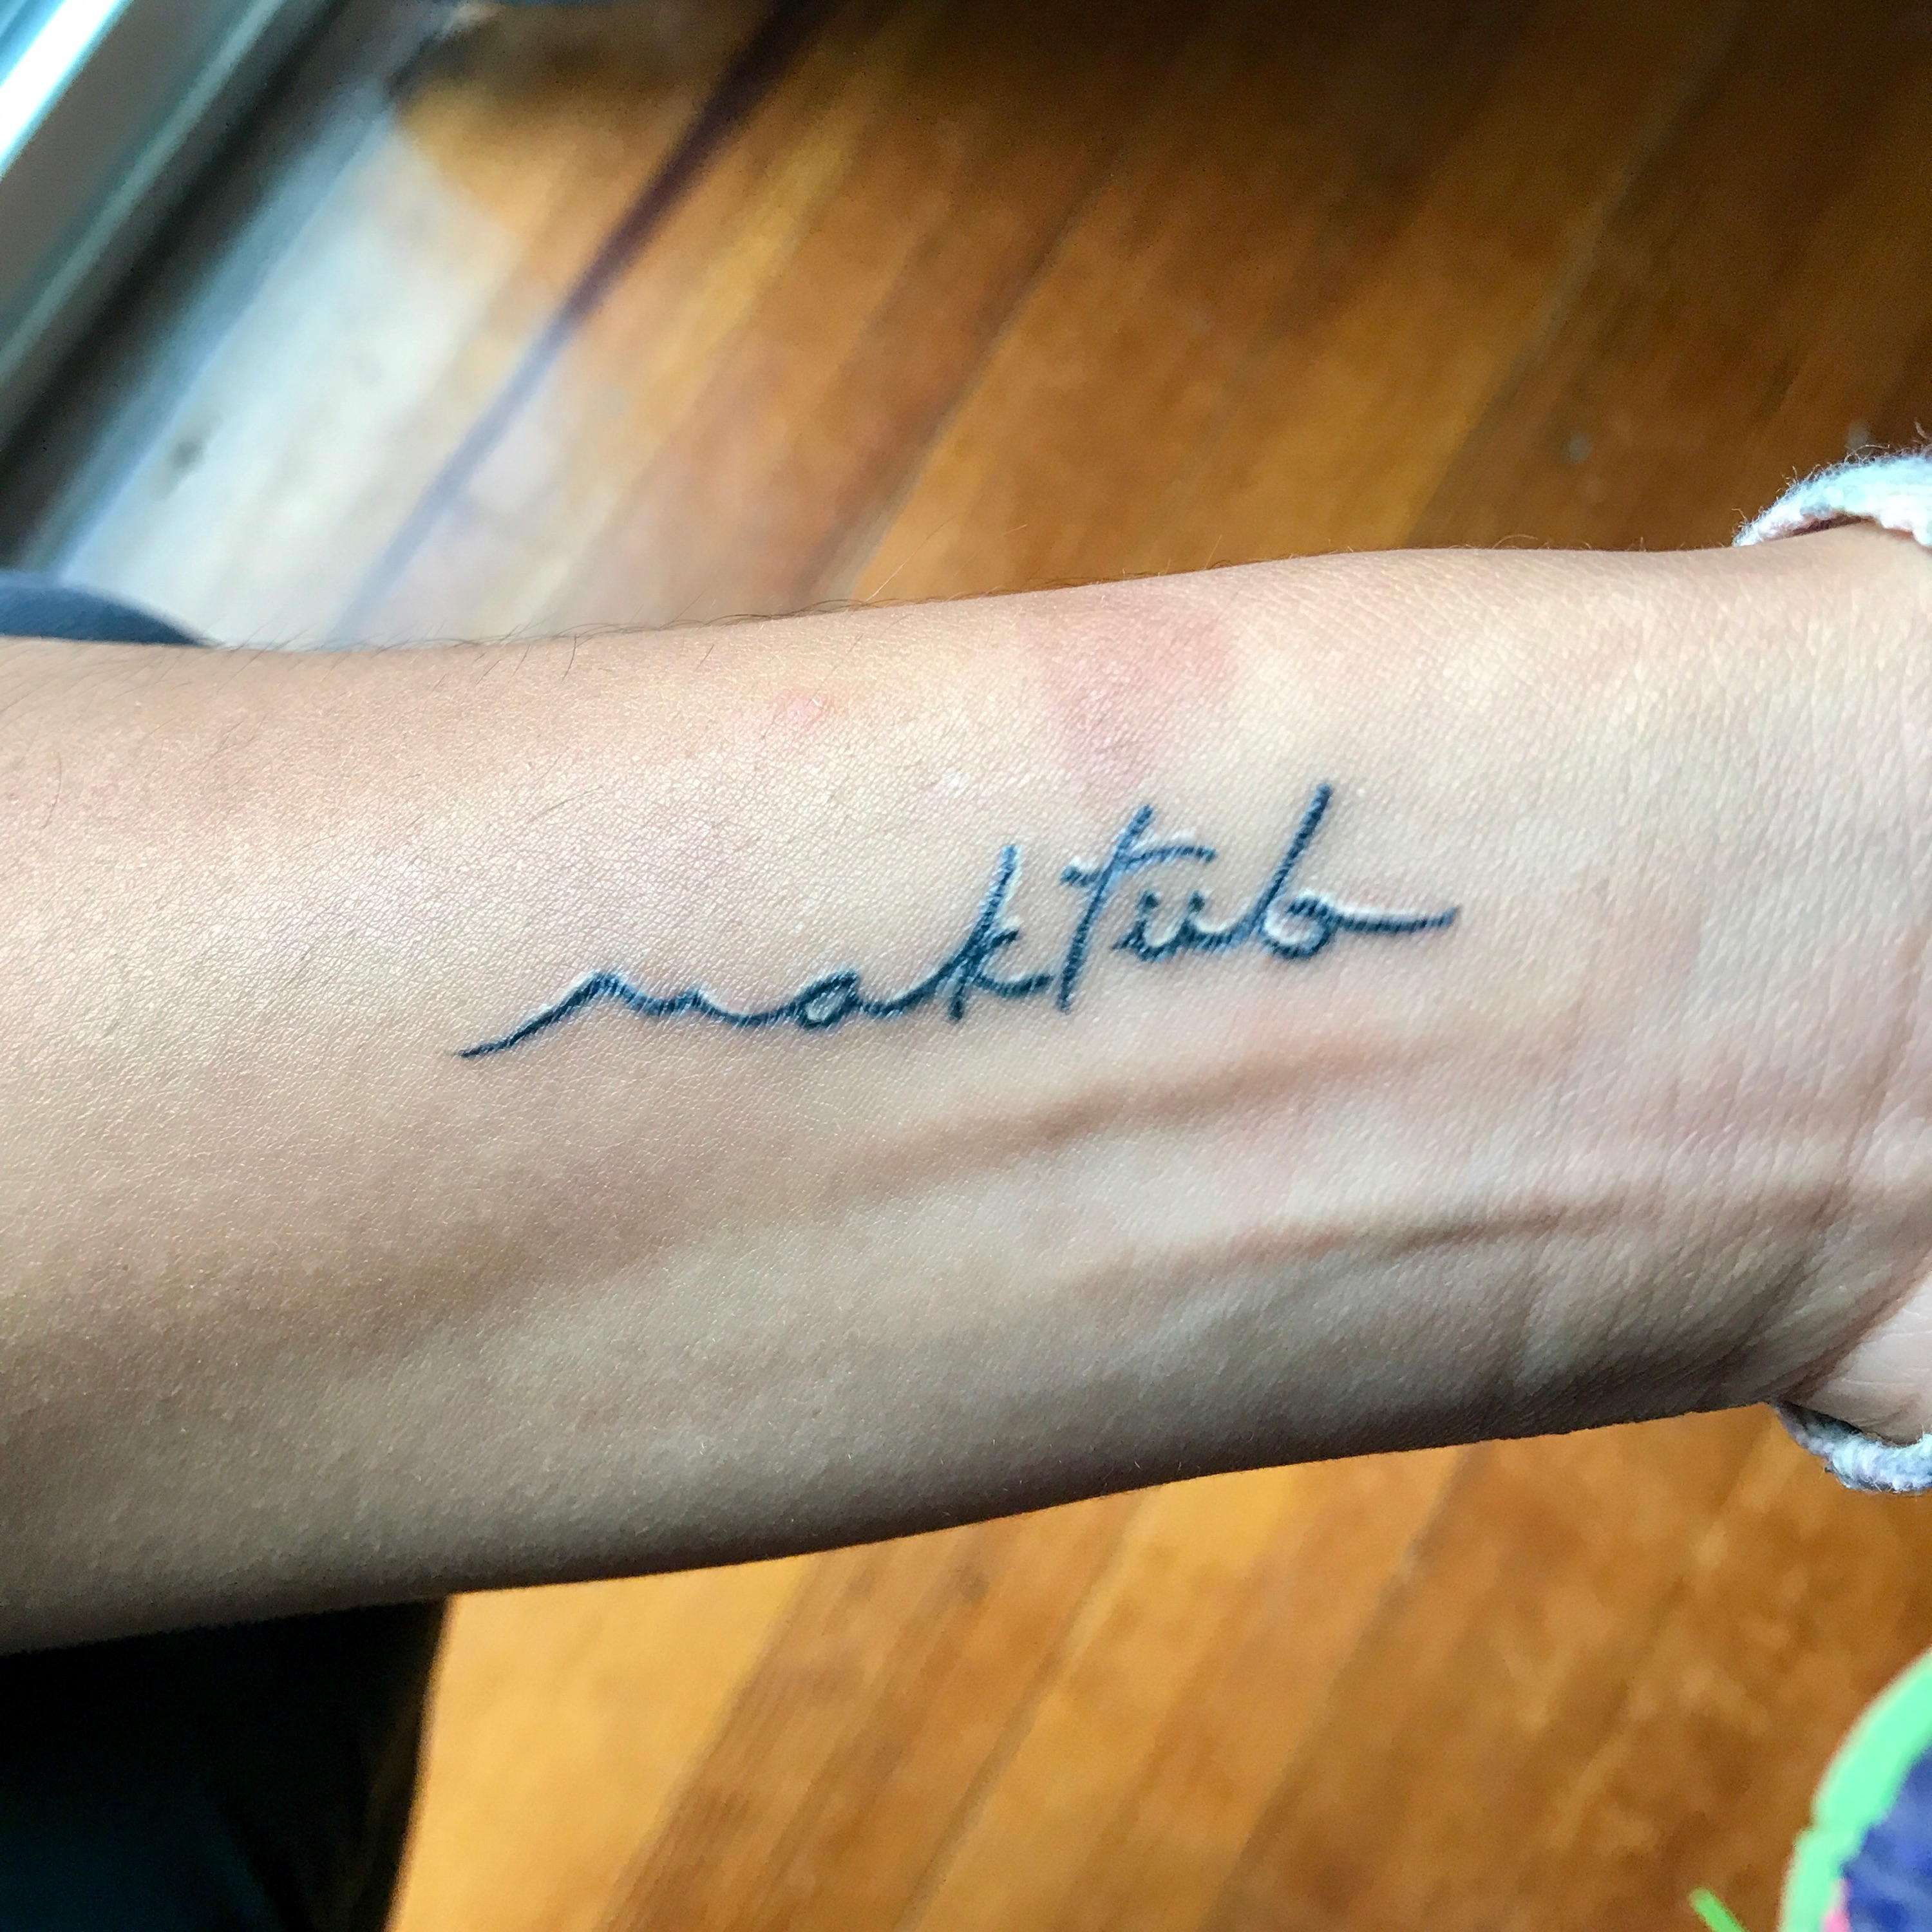 Tatuagem Maktub